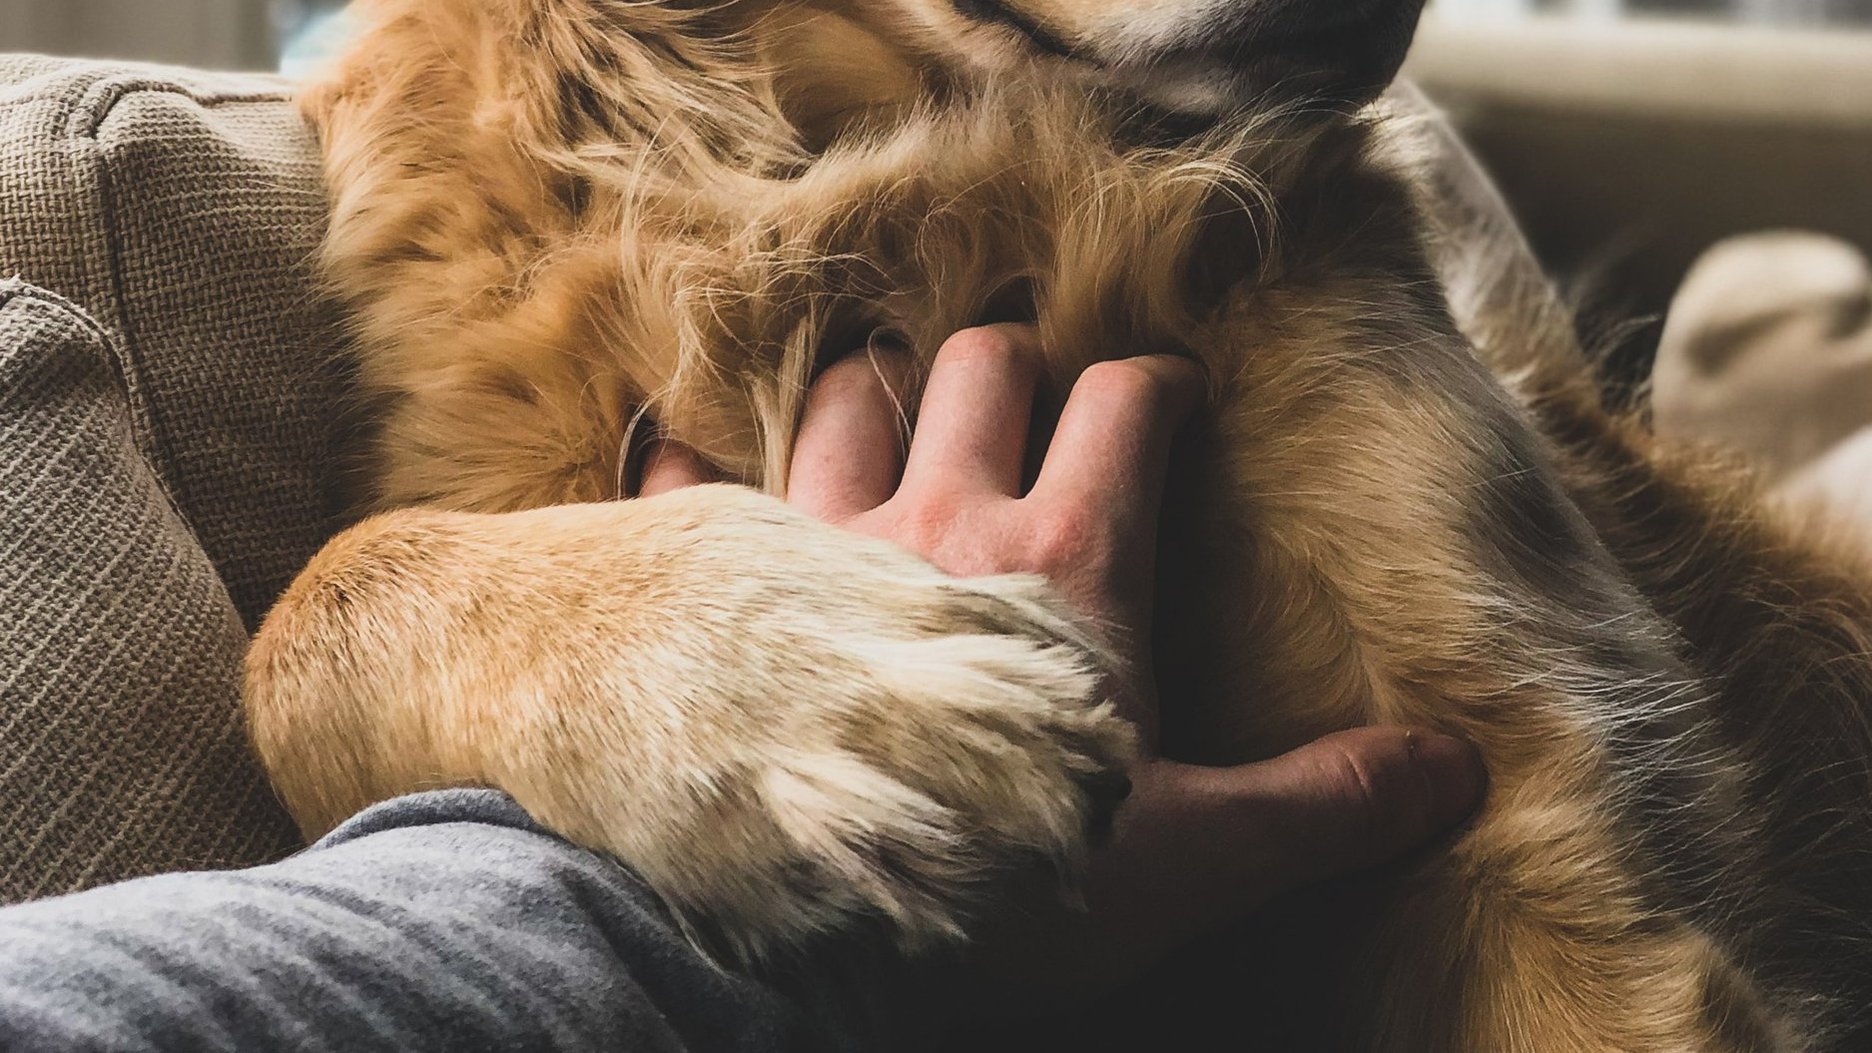 Pets mail. Домашние животные помогают нам справиться со стрессом. Как домашние животные помогают справиться со стрессом.